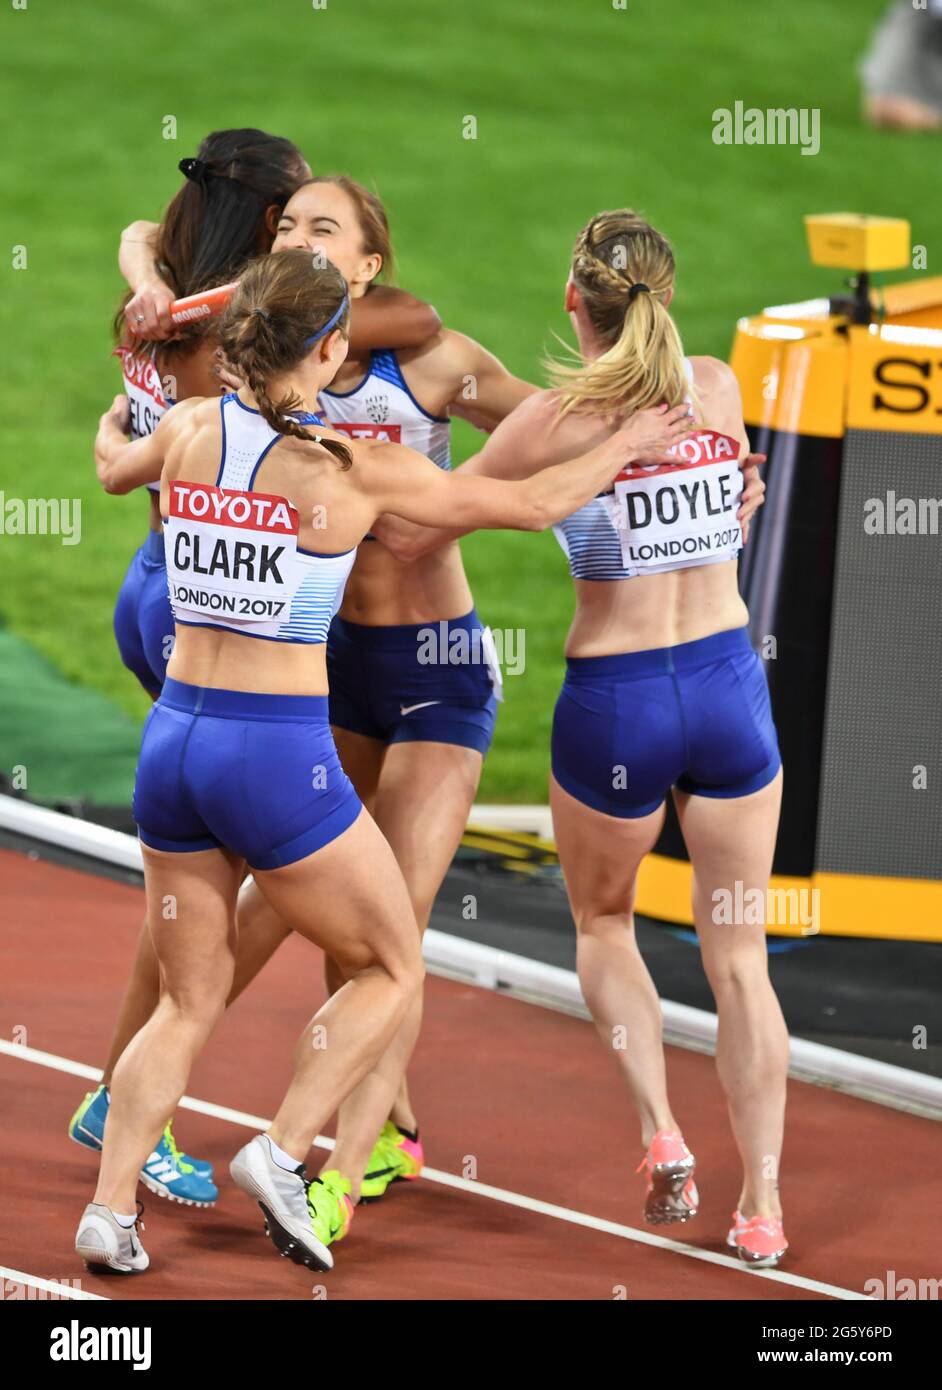 4x400 mujeres de relevo: Gran Bretaña (medalla de plata), Zoey Clark, Laviai Nielsen, Eilidh Doyle, Emily Diamond. Campeonato Mundial de la IAAF Londres 2017 Foto de stock